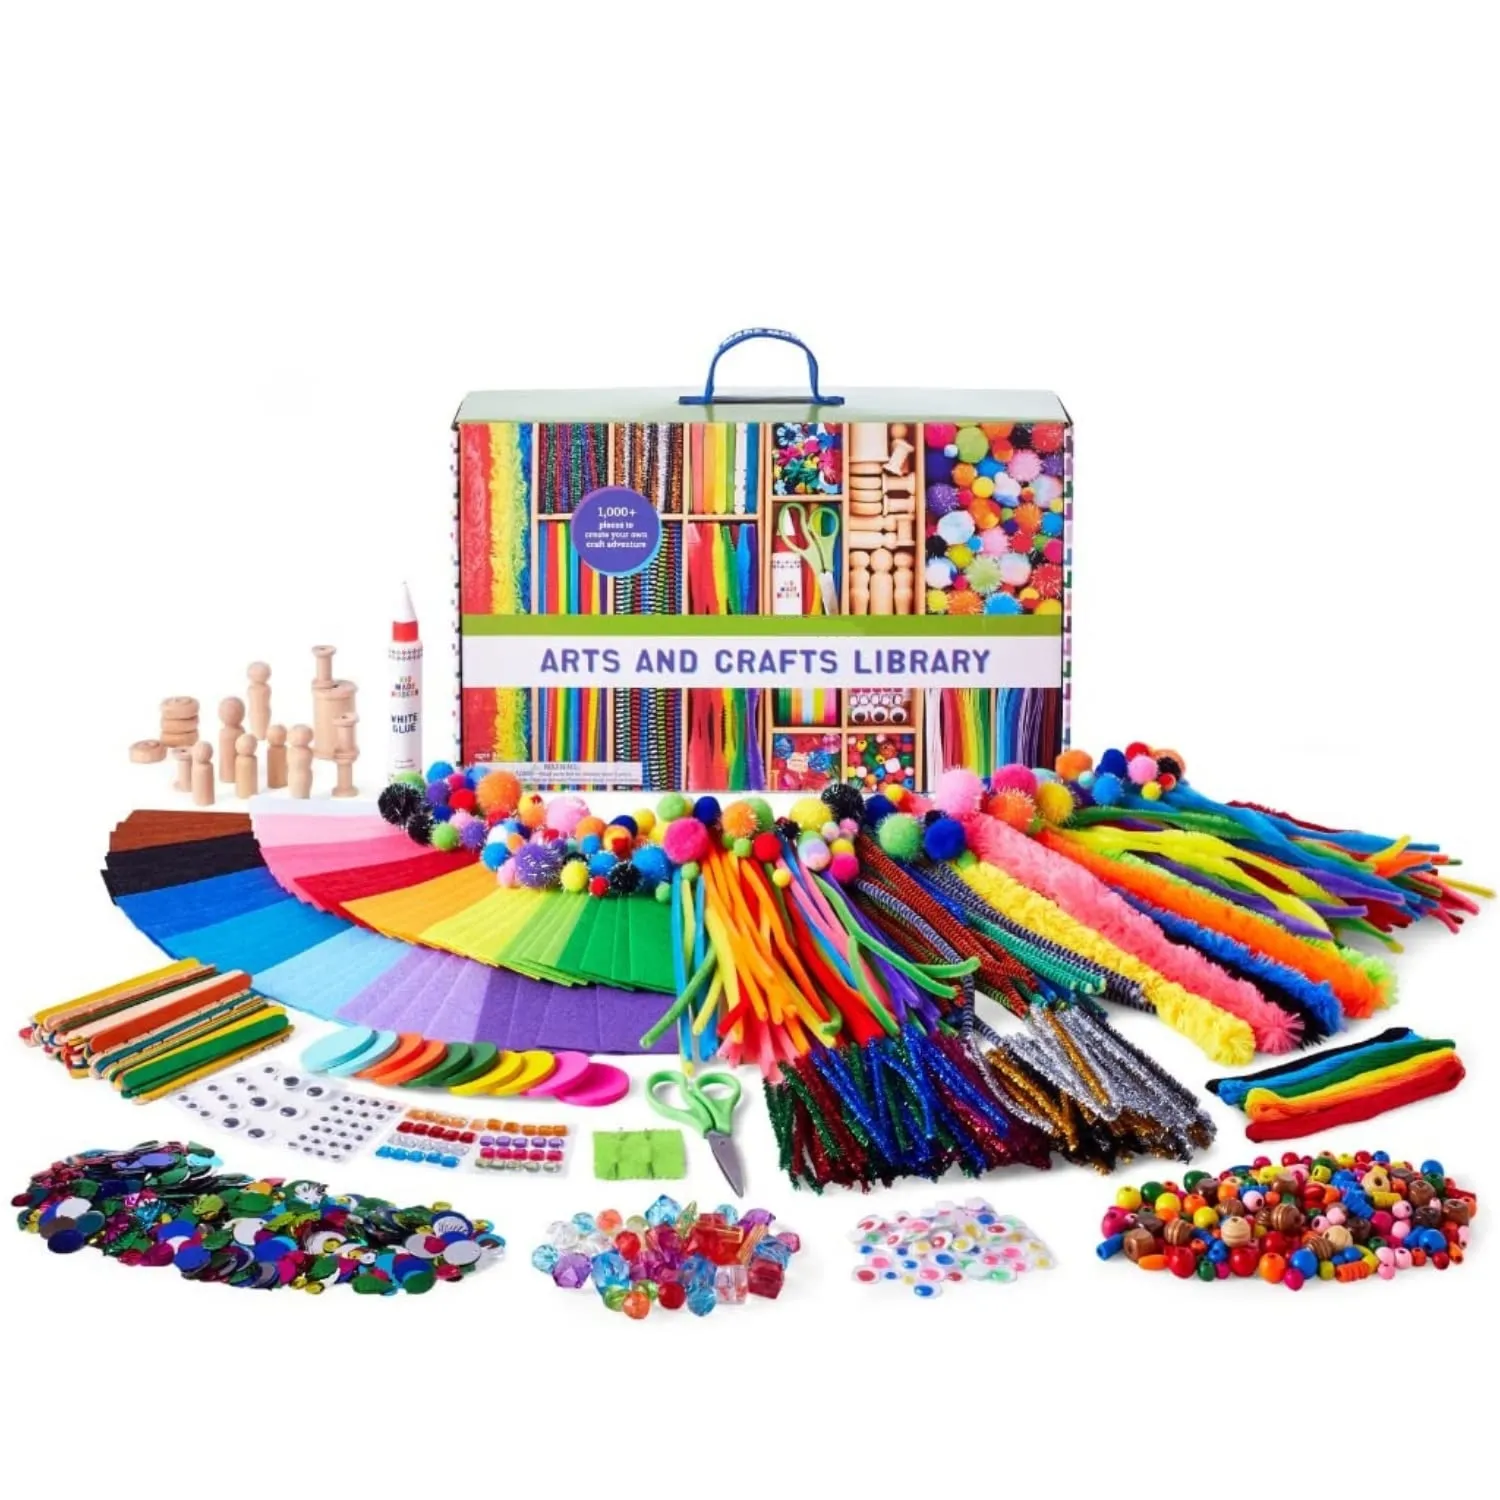 Fournitures d'art et d'artisanat bibliothèque bricolage pour enfants artisanat comprend des fournitures d'art pour l'école